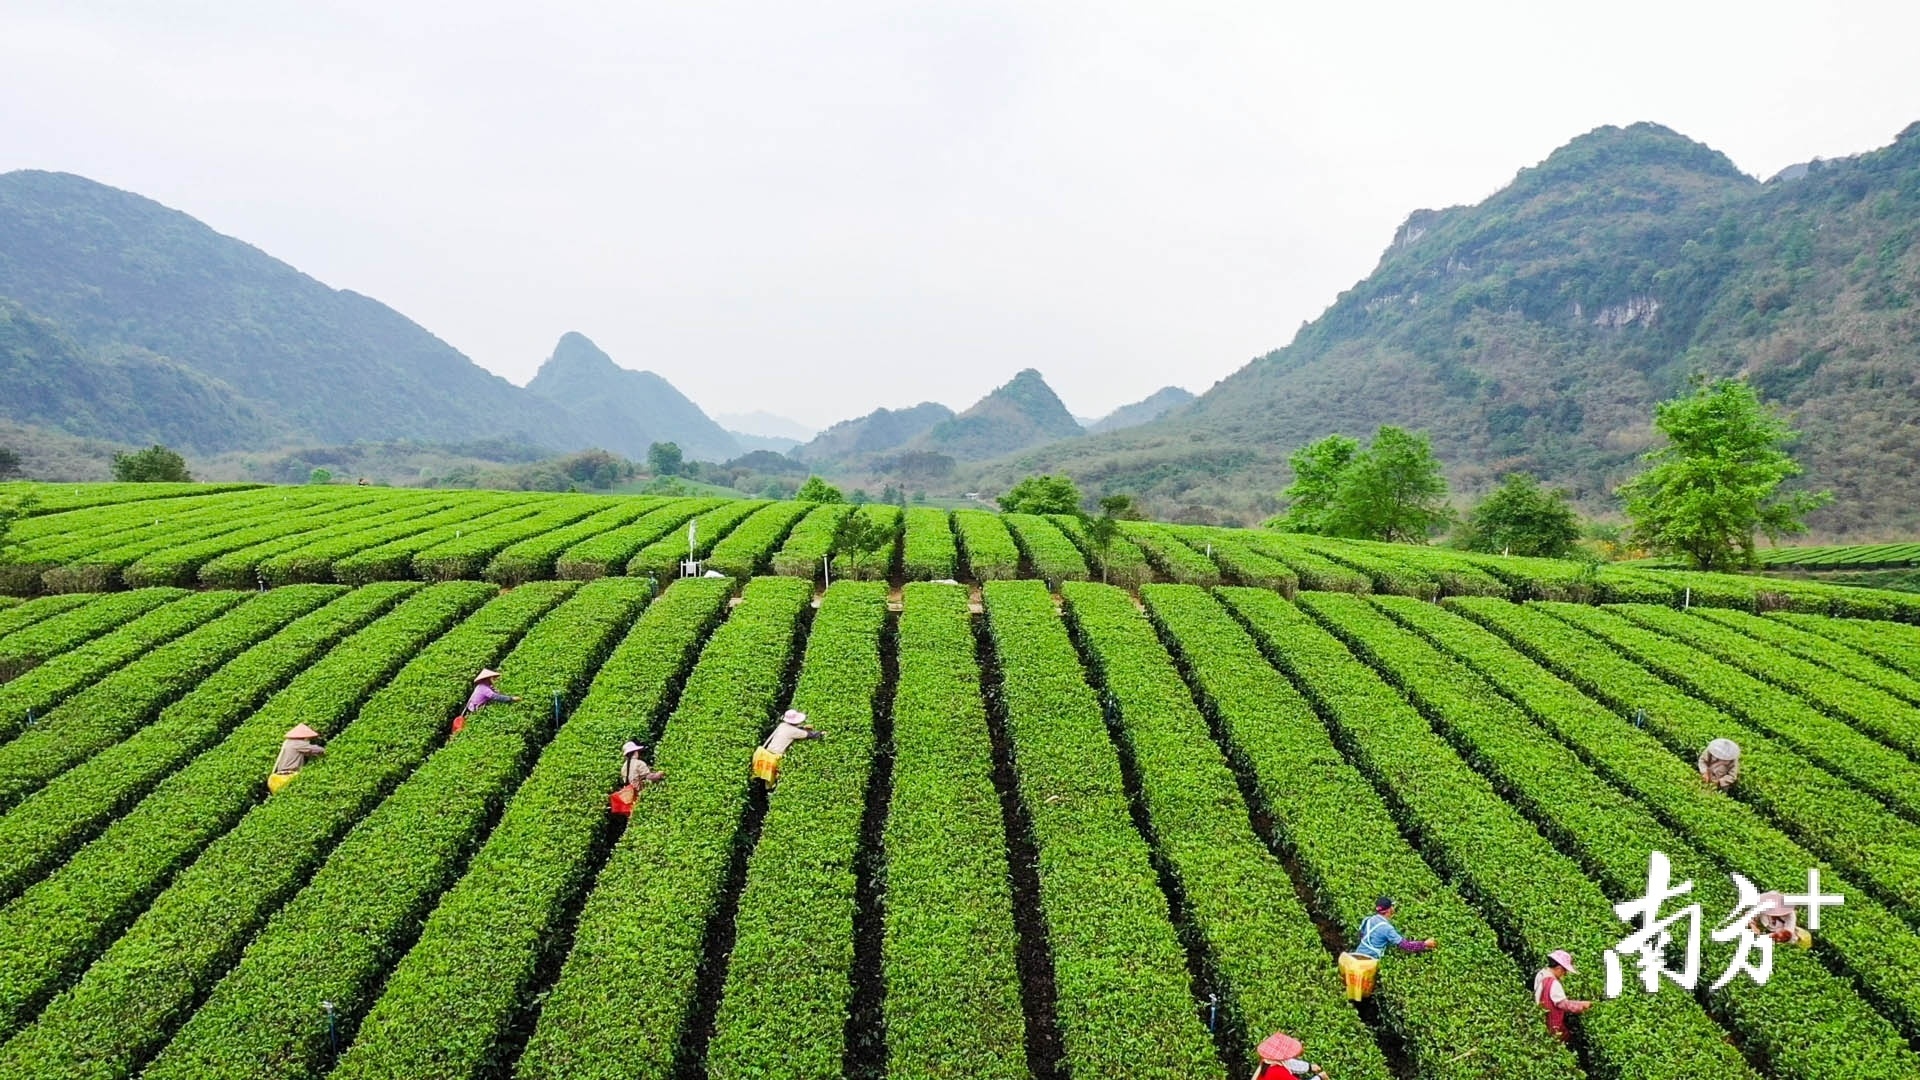 英德红茶头采节活动将拉开全市茶园今年首轮春茶采摘的大幕。曾亮超 摄